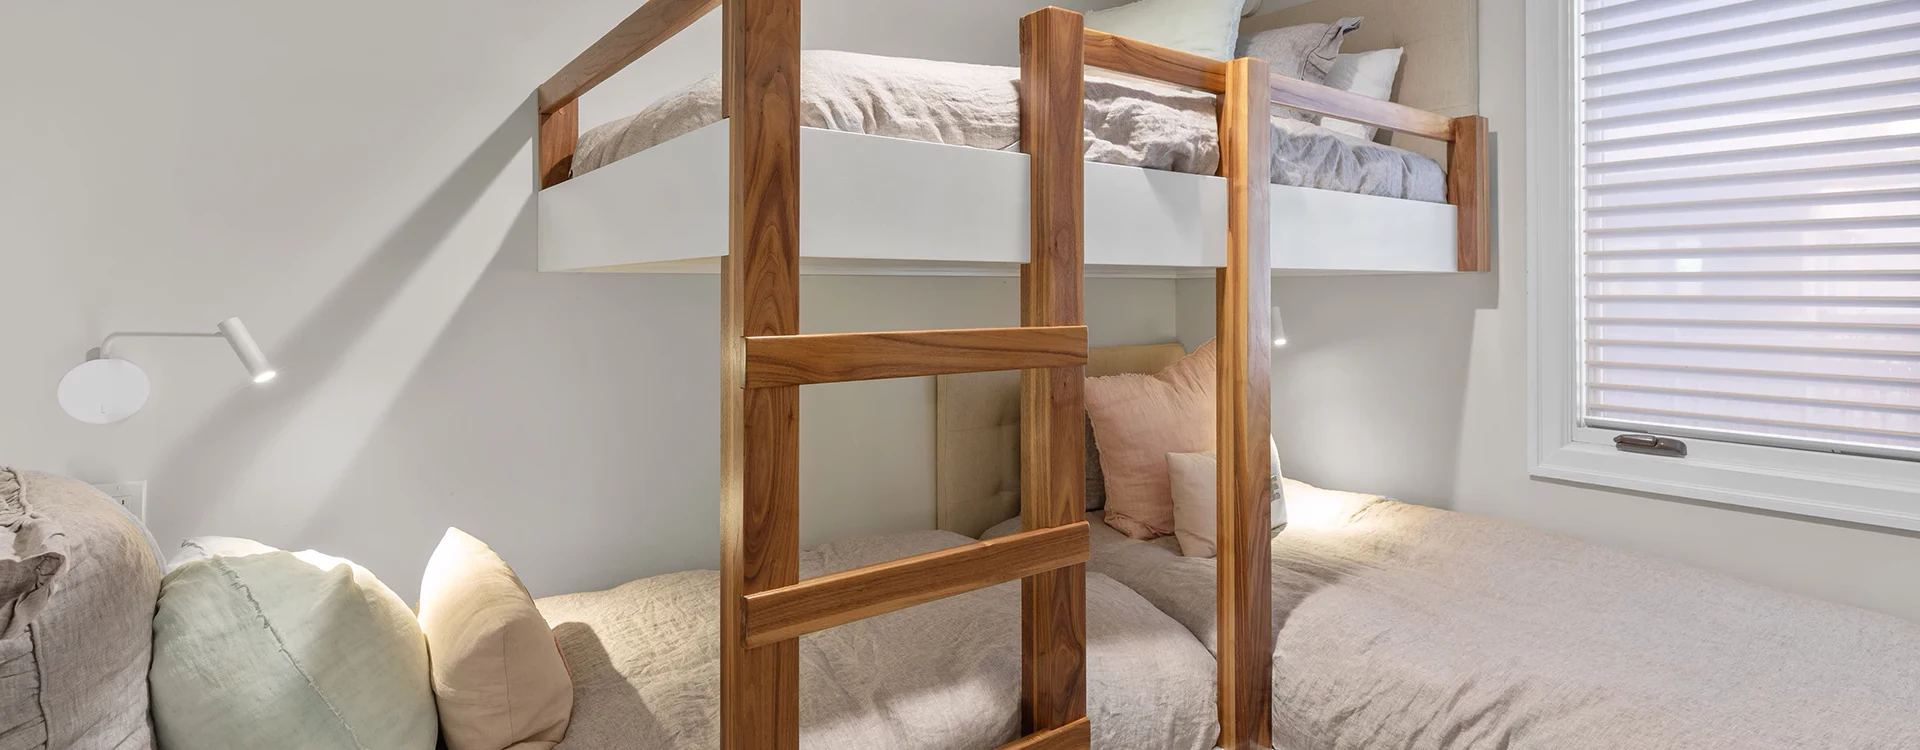 8.0-lorian-luxe-mountain-village-bunk-bedroom.webp